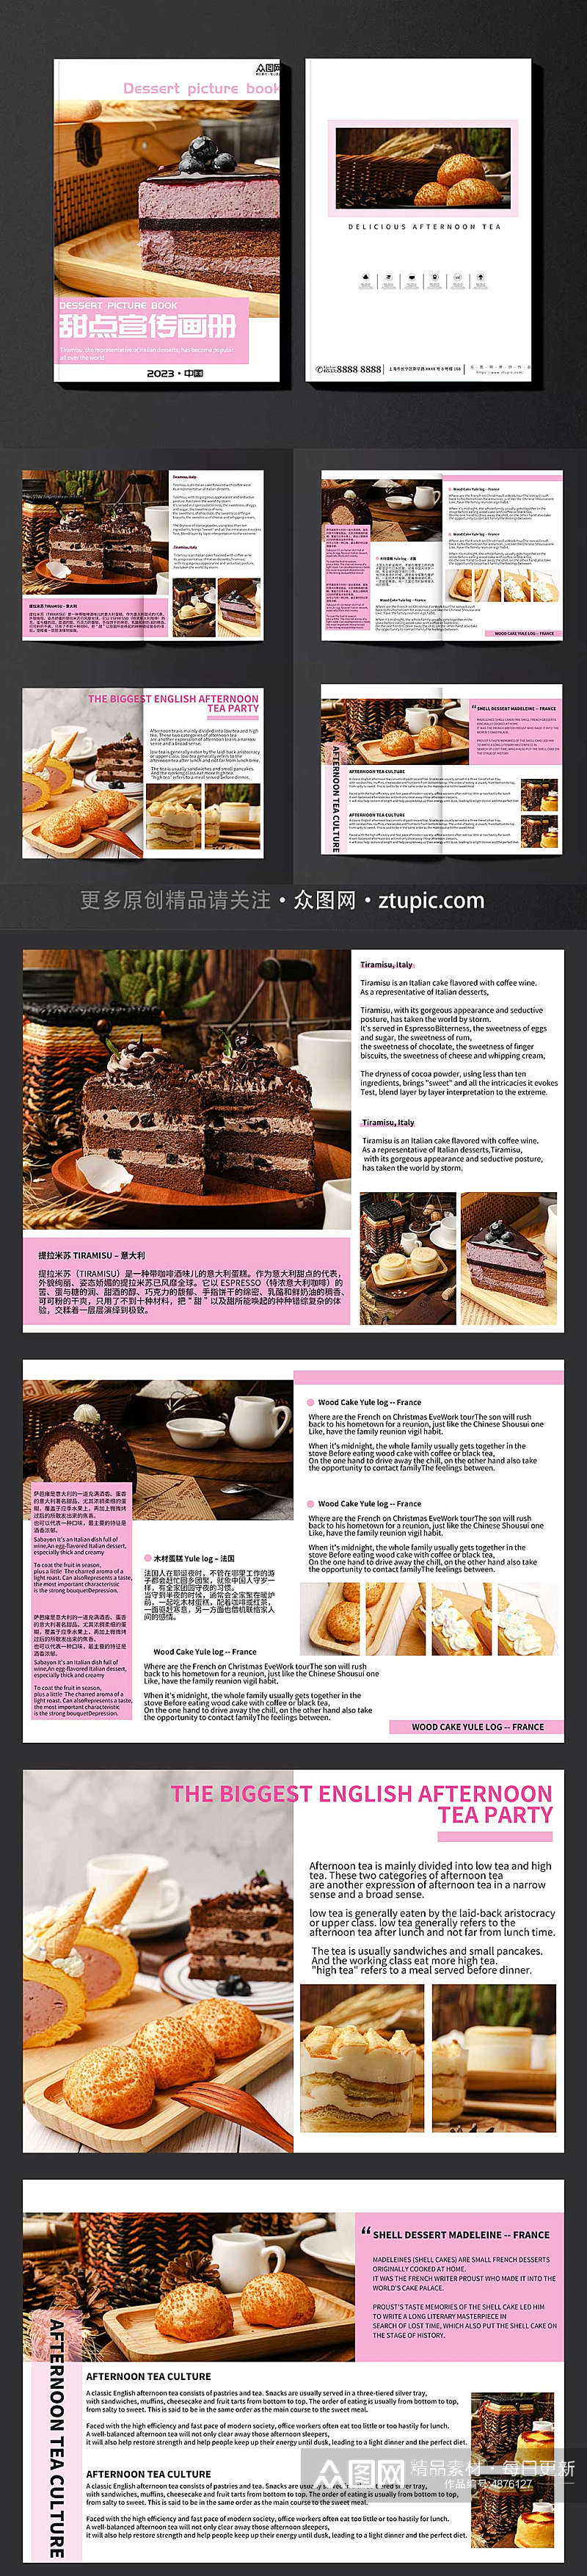 粉色甜点甜品蛋糕下午茶美食宣传册画册素材